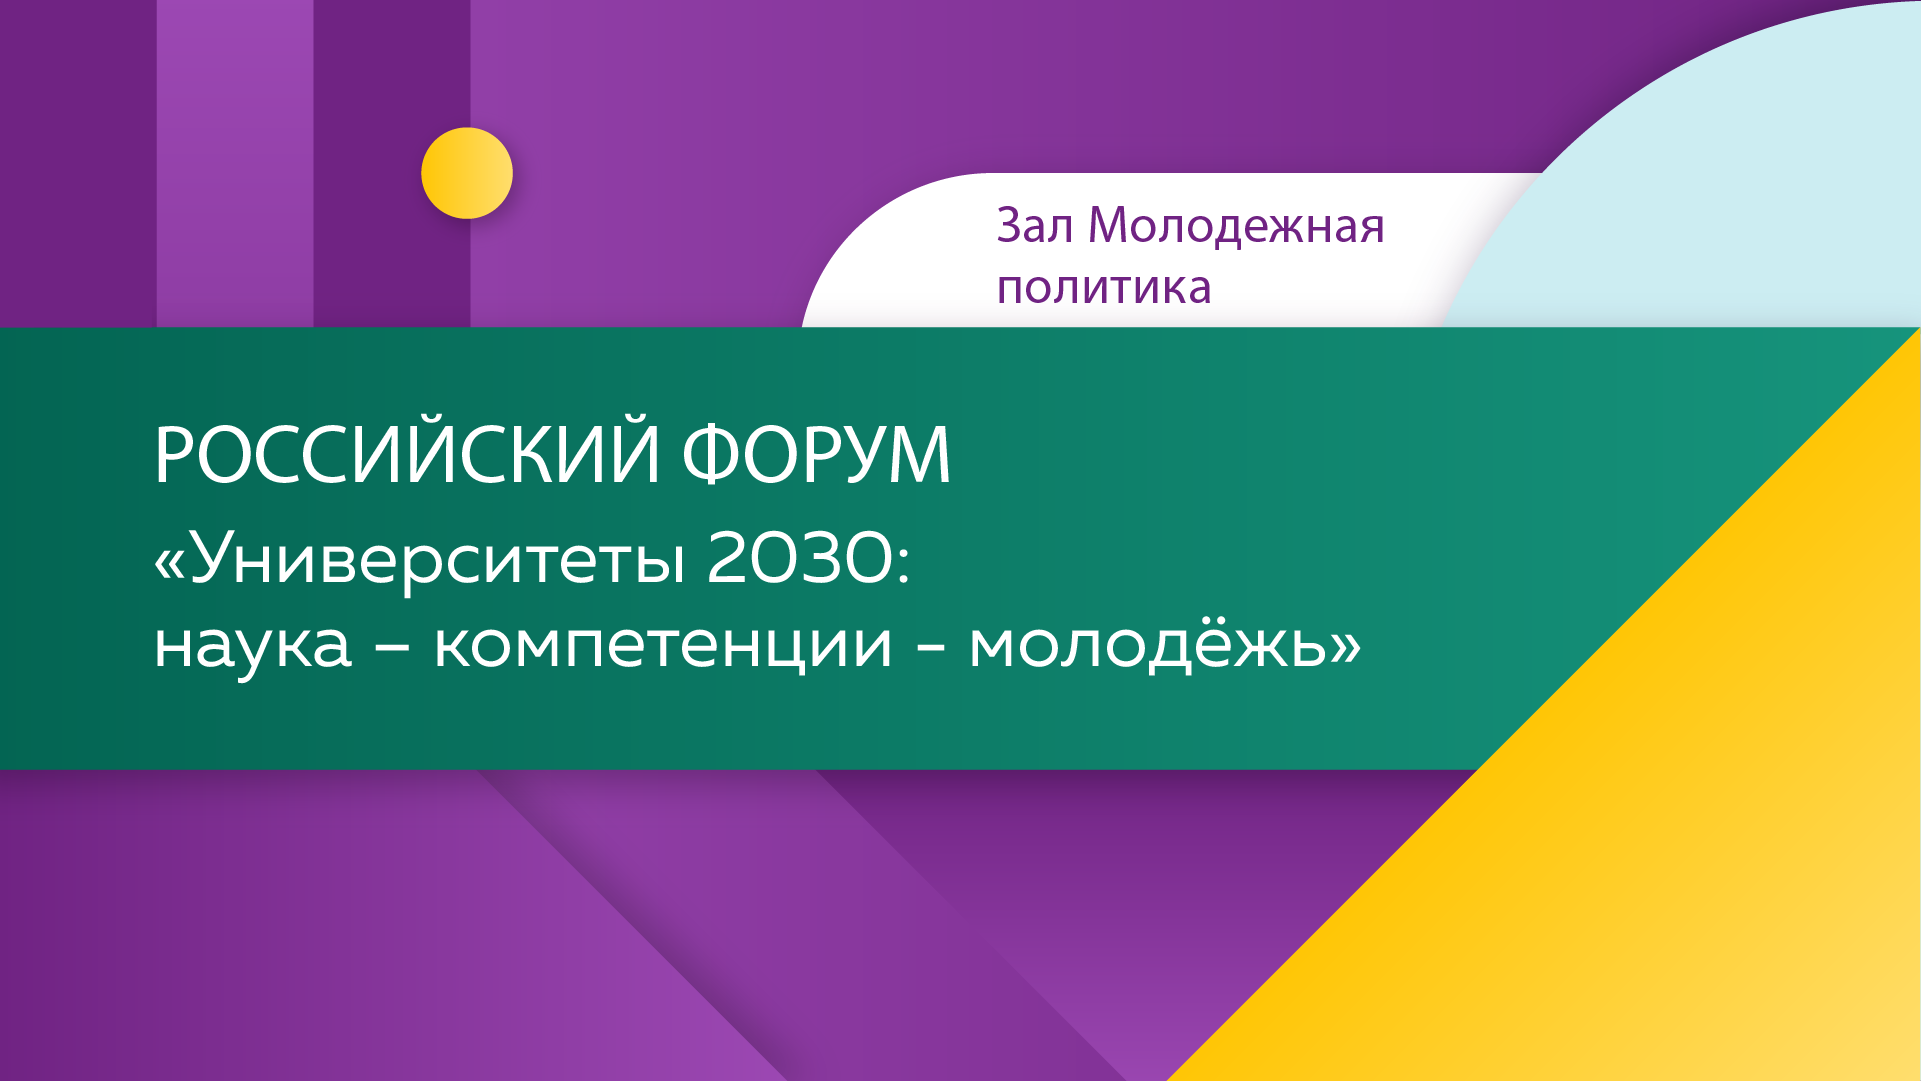 Социальная память молодежи 2030. Наука 2030. Университет 2030.